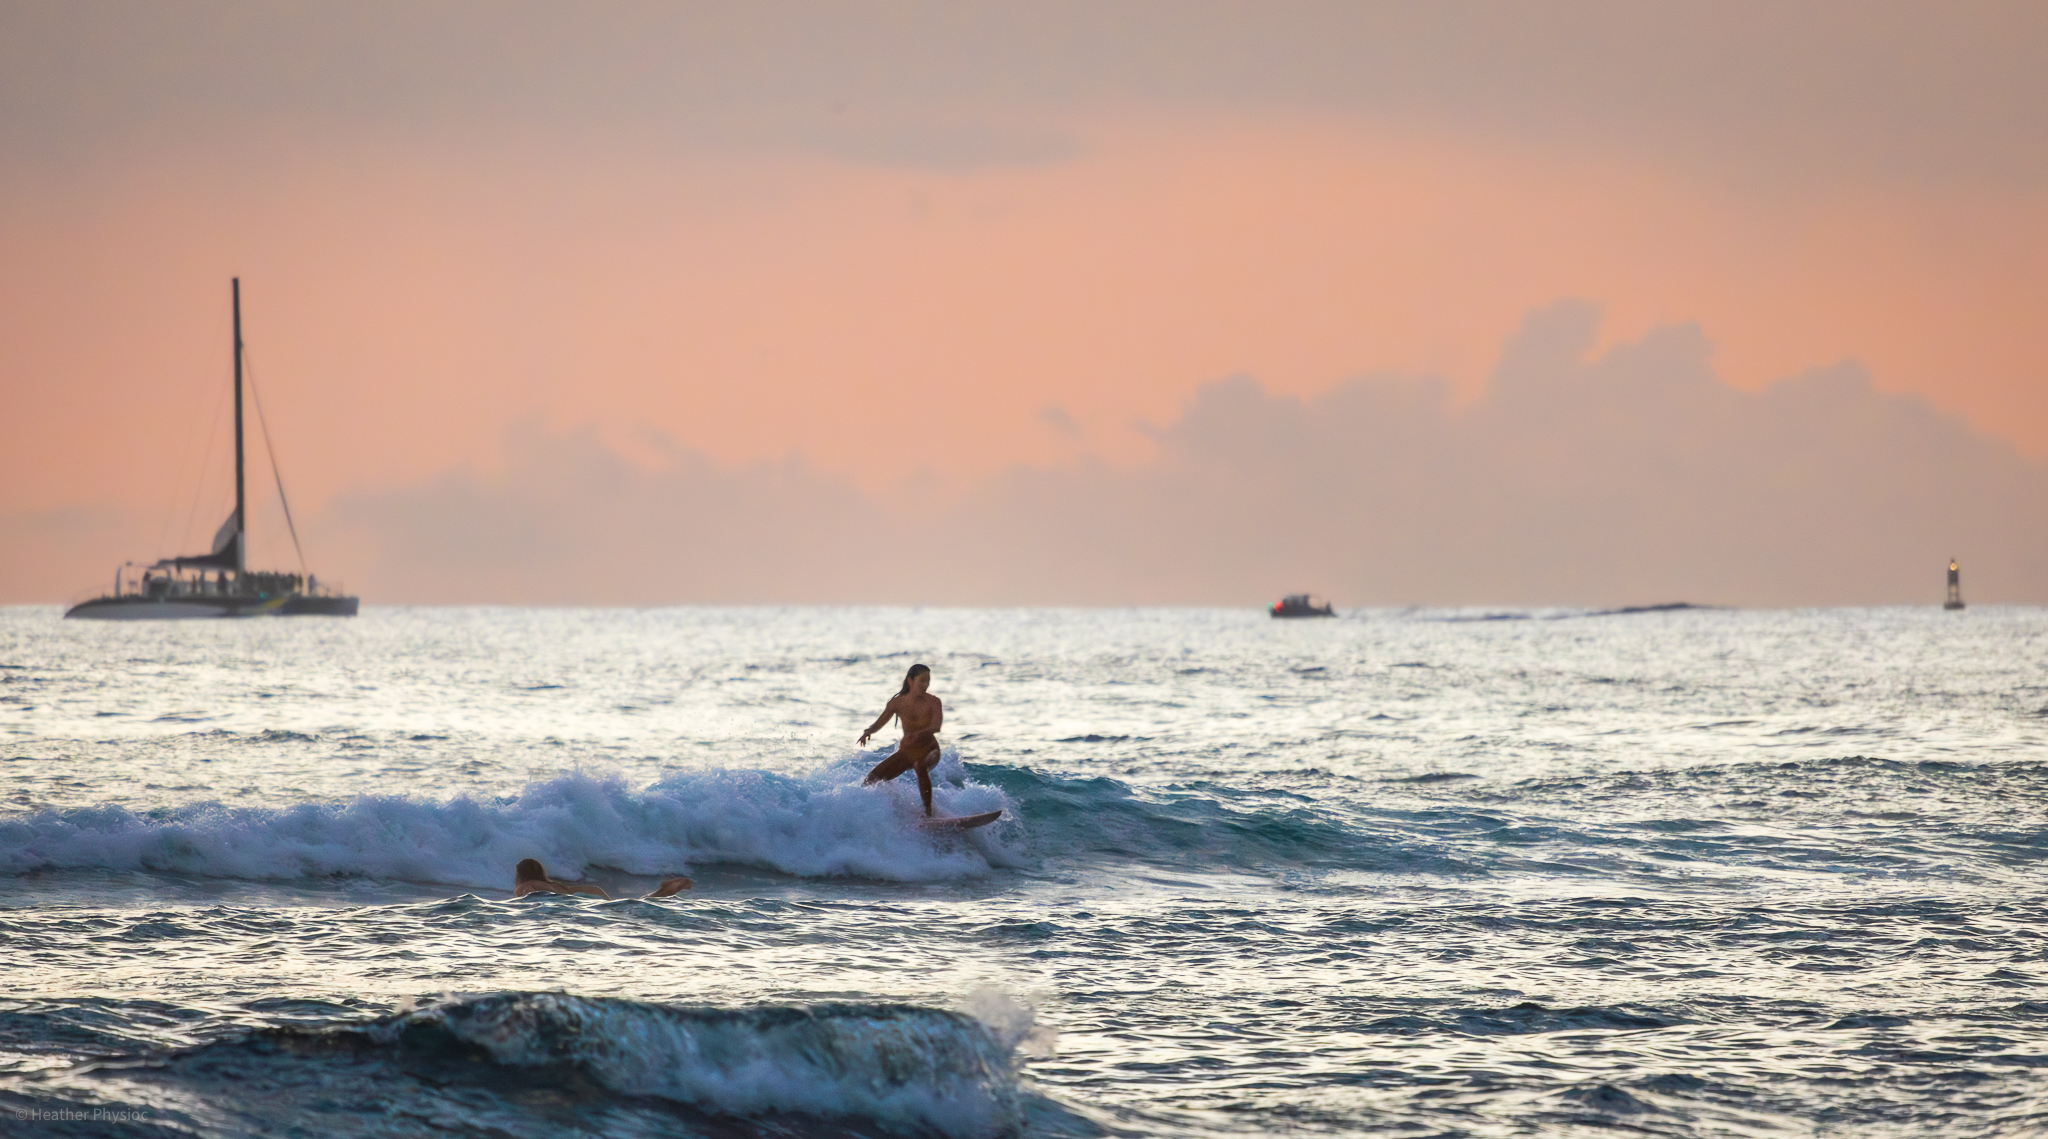 Woman surfing at sunset near Waikiki beach